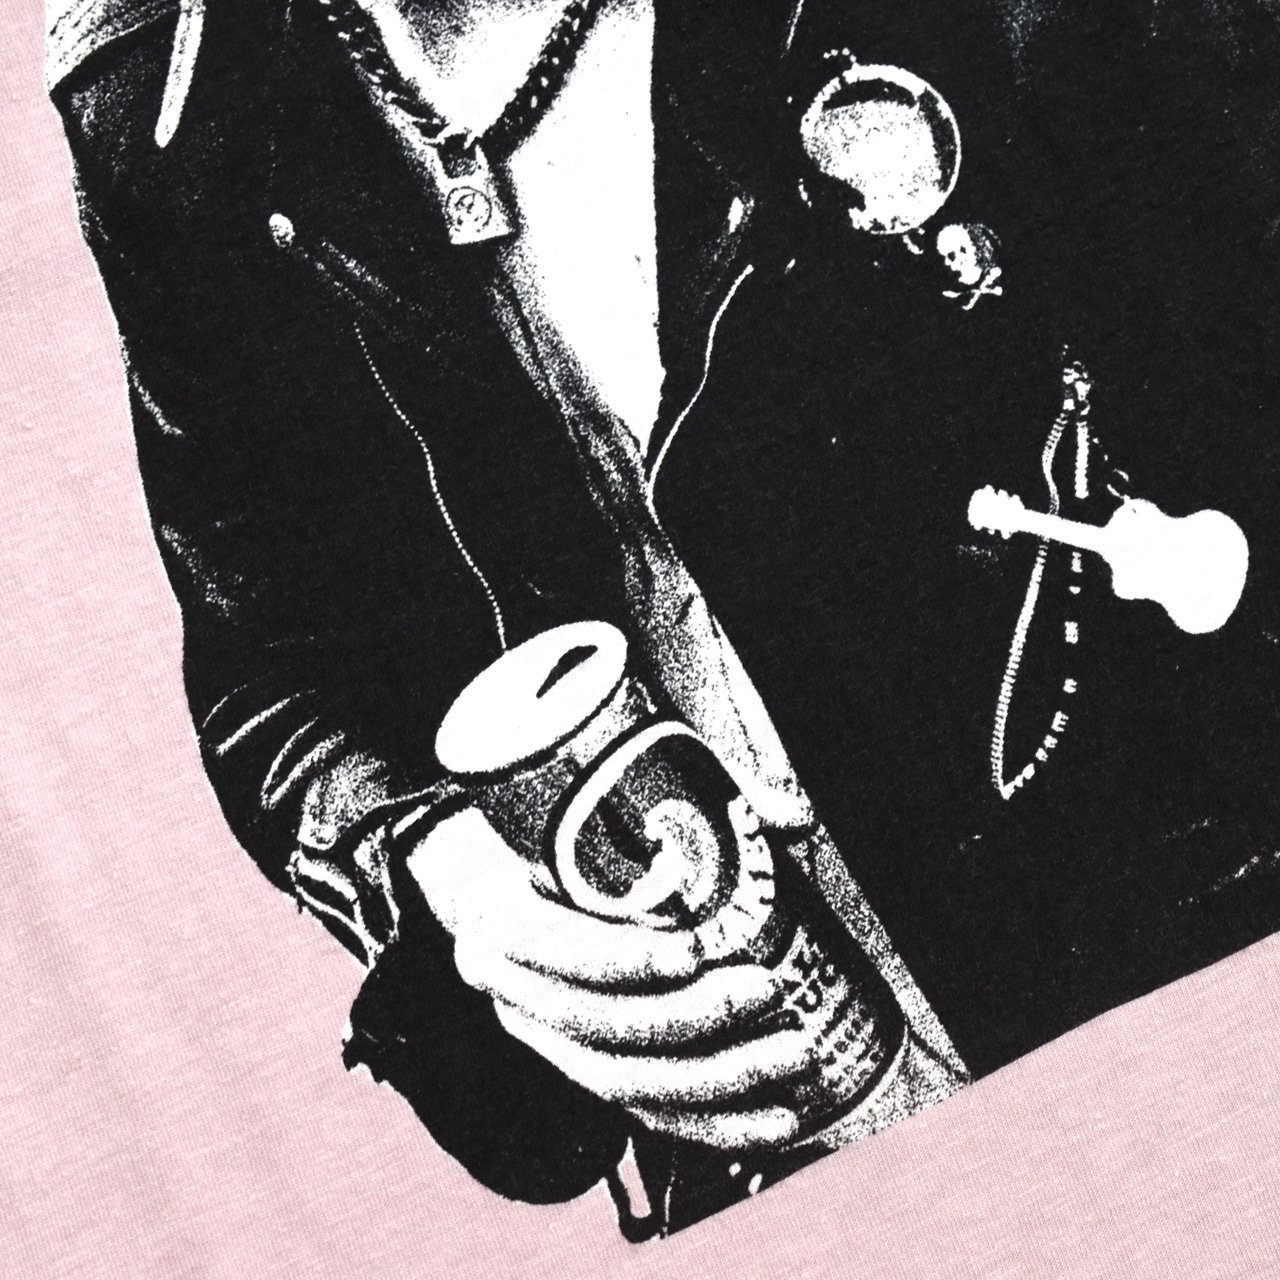 HYSTERIC GLAMOUR(ヒステリックグラマー)
SID VICIOUS(シド・ヴィシャス)
DENNIS MORRIS
半袖Tシャツ